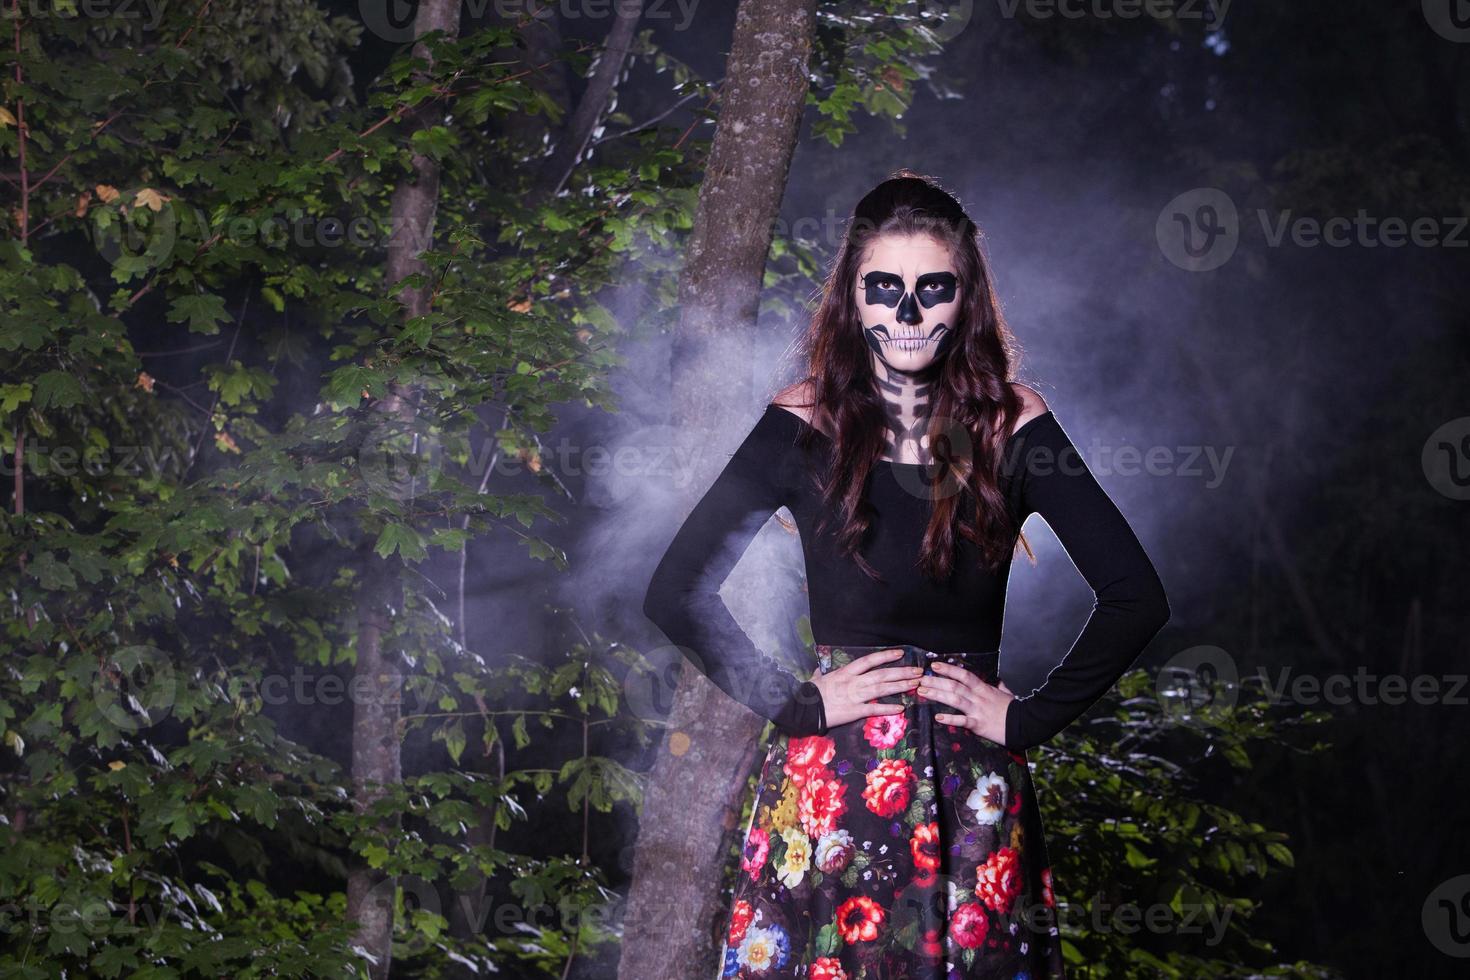 retrato de mulher de vampiro de halloween sobre fundo de noite assustadora. design de arte de moda de maquiagem de vampiro. garota modelo em traje de halloween e maquiagem. foto